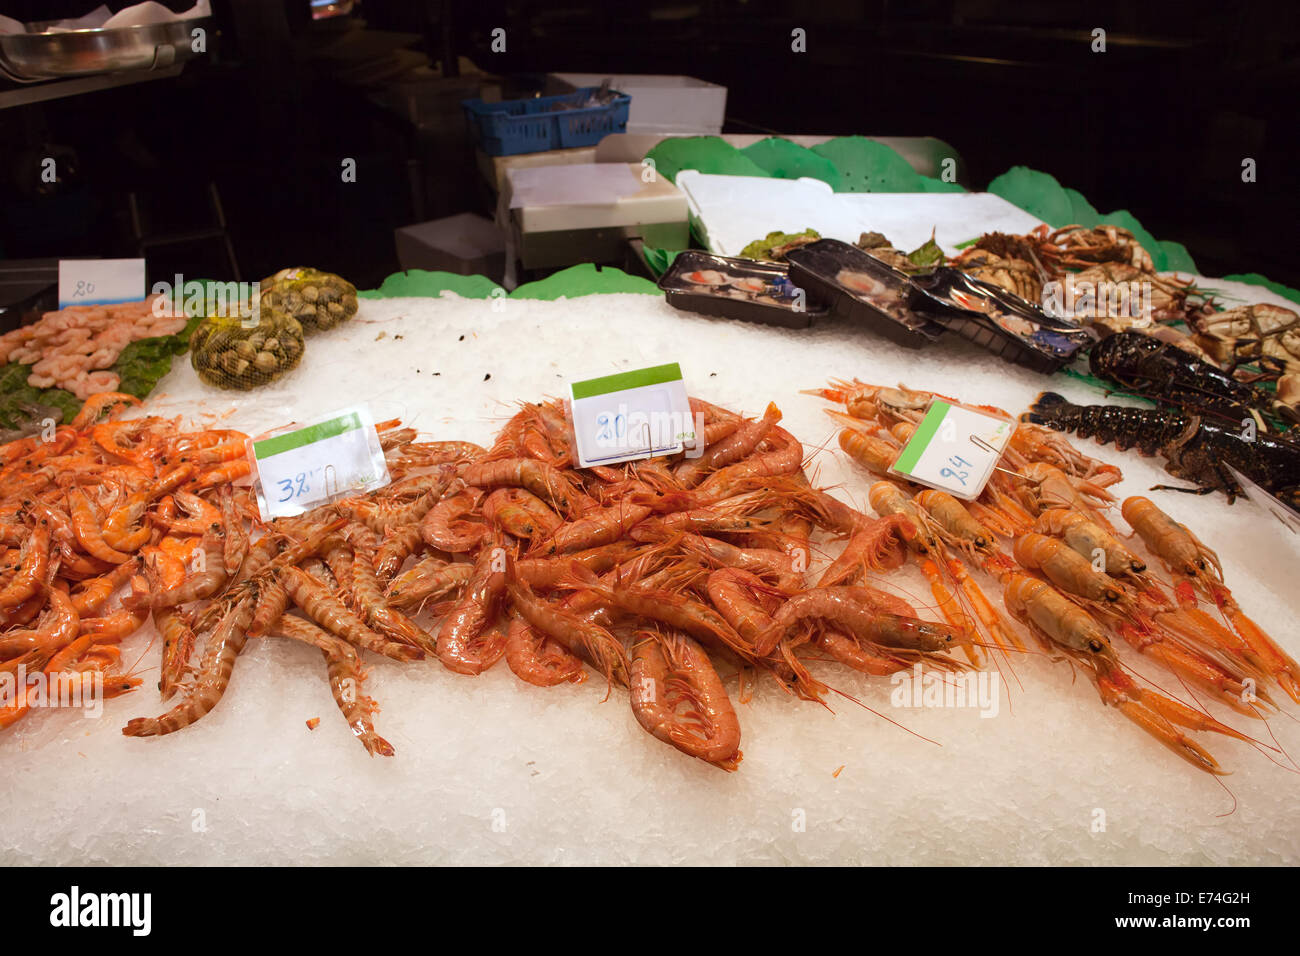 Sani frutti di mare crudi, gamberetti freschi di diversi tipi e prezzi in Euro per kg su un mercato alimentare di stallo. Foto Stock